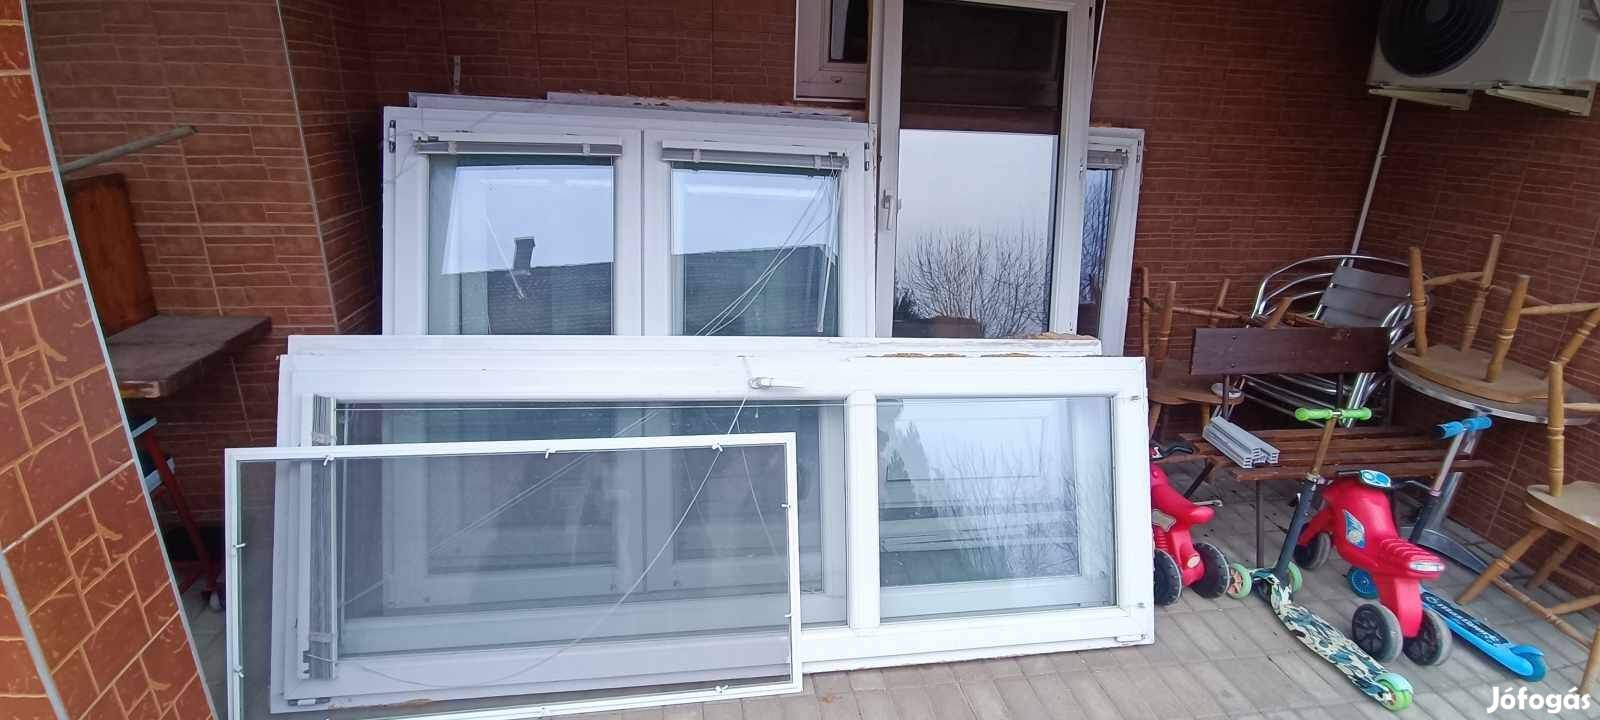 Eladó Ajtó ablak. Felújítás miatt eladóak az alábbi nyílászárók